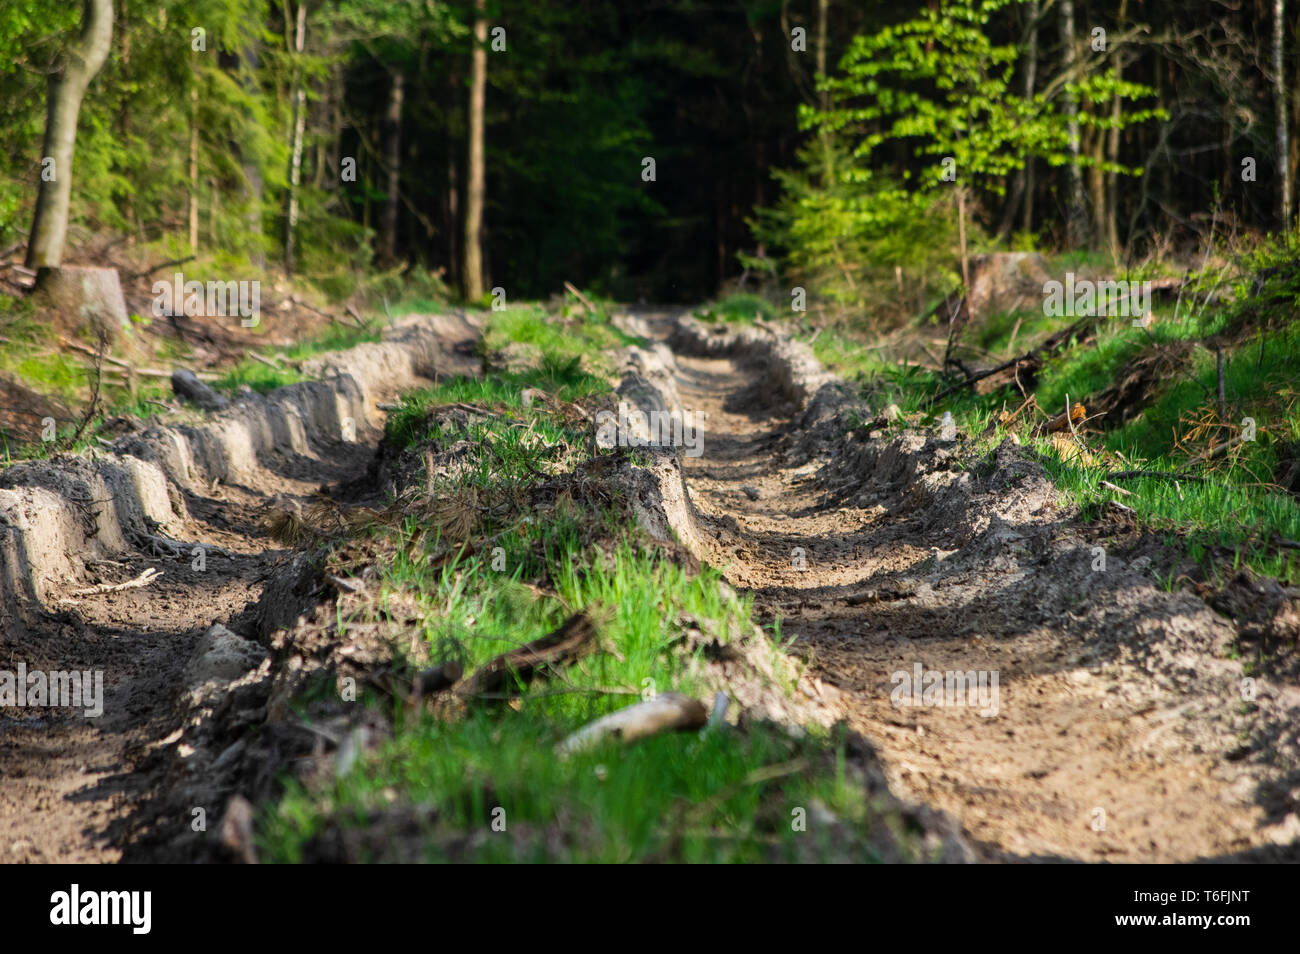 Le sol forestier ressort endommagé par une machine harvester Banque D'Images